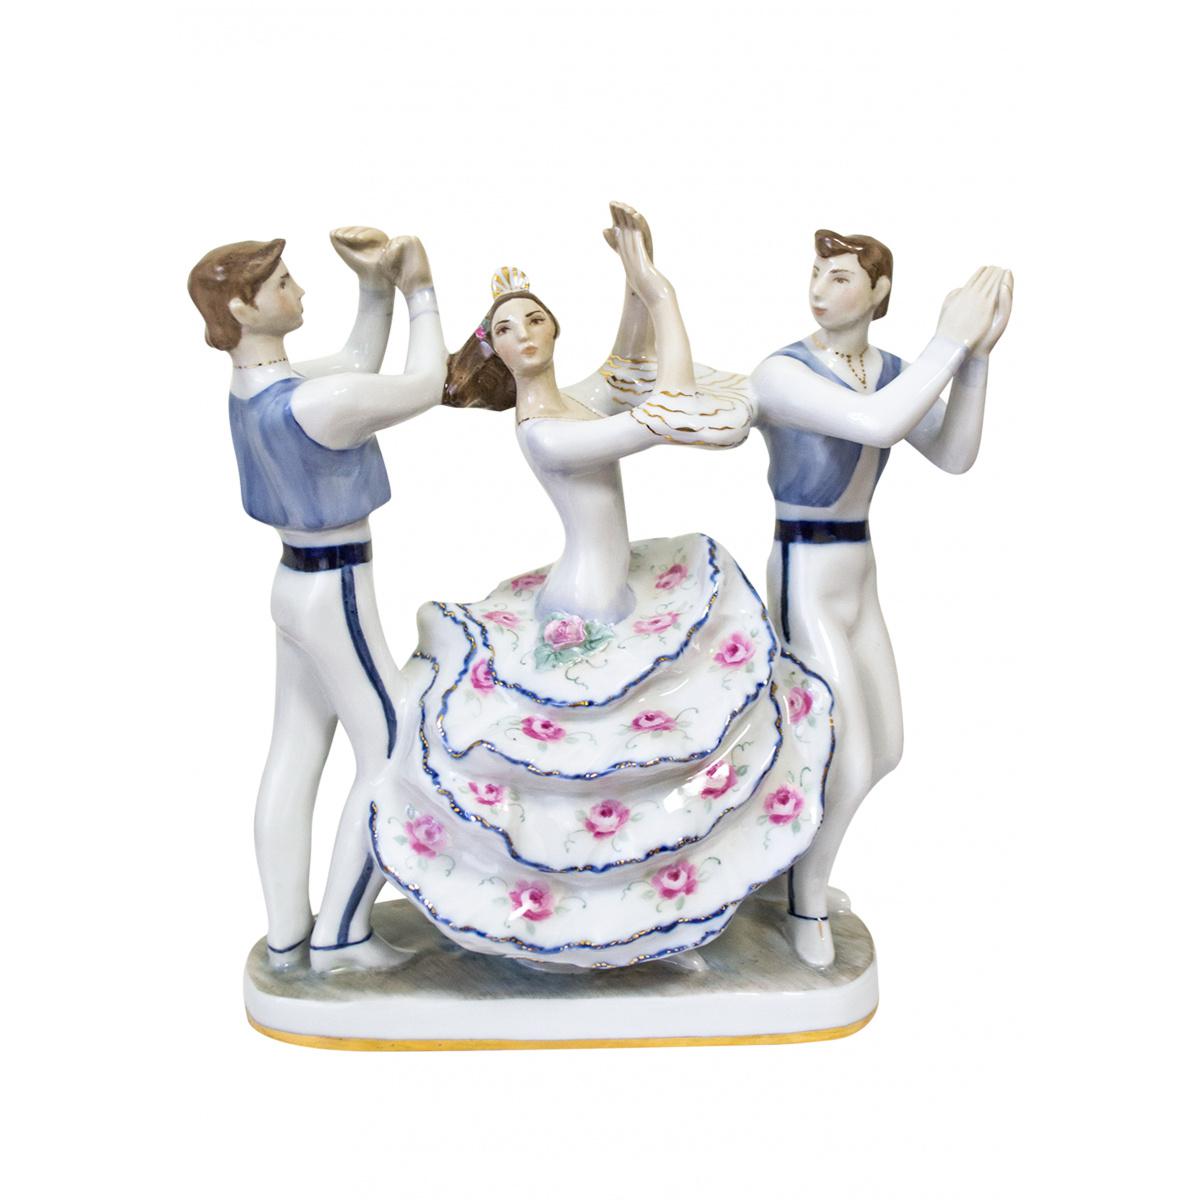 Скульптура "испанский танец" автор гатилова е.и. (возможны  варианты росписи)